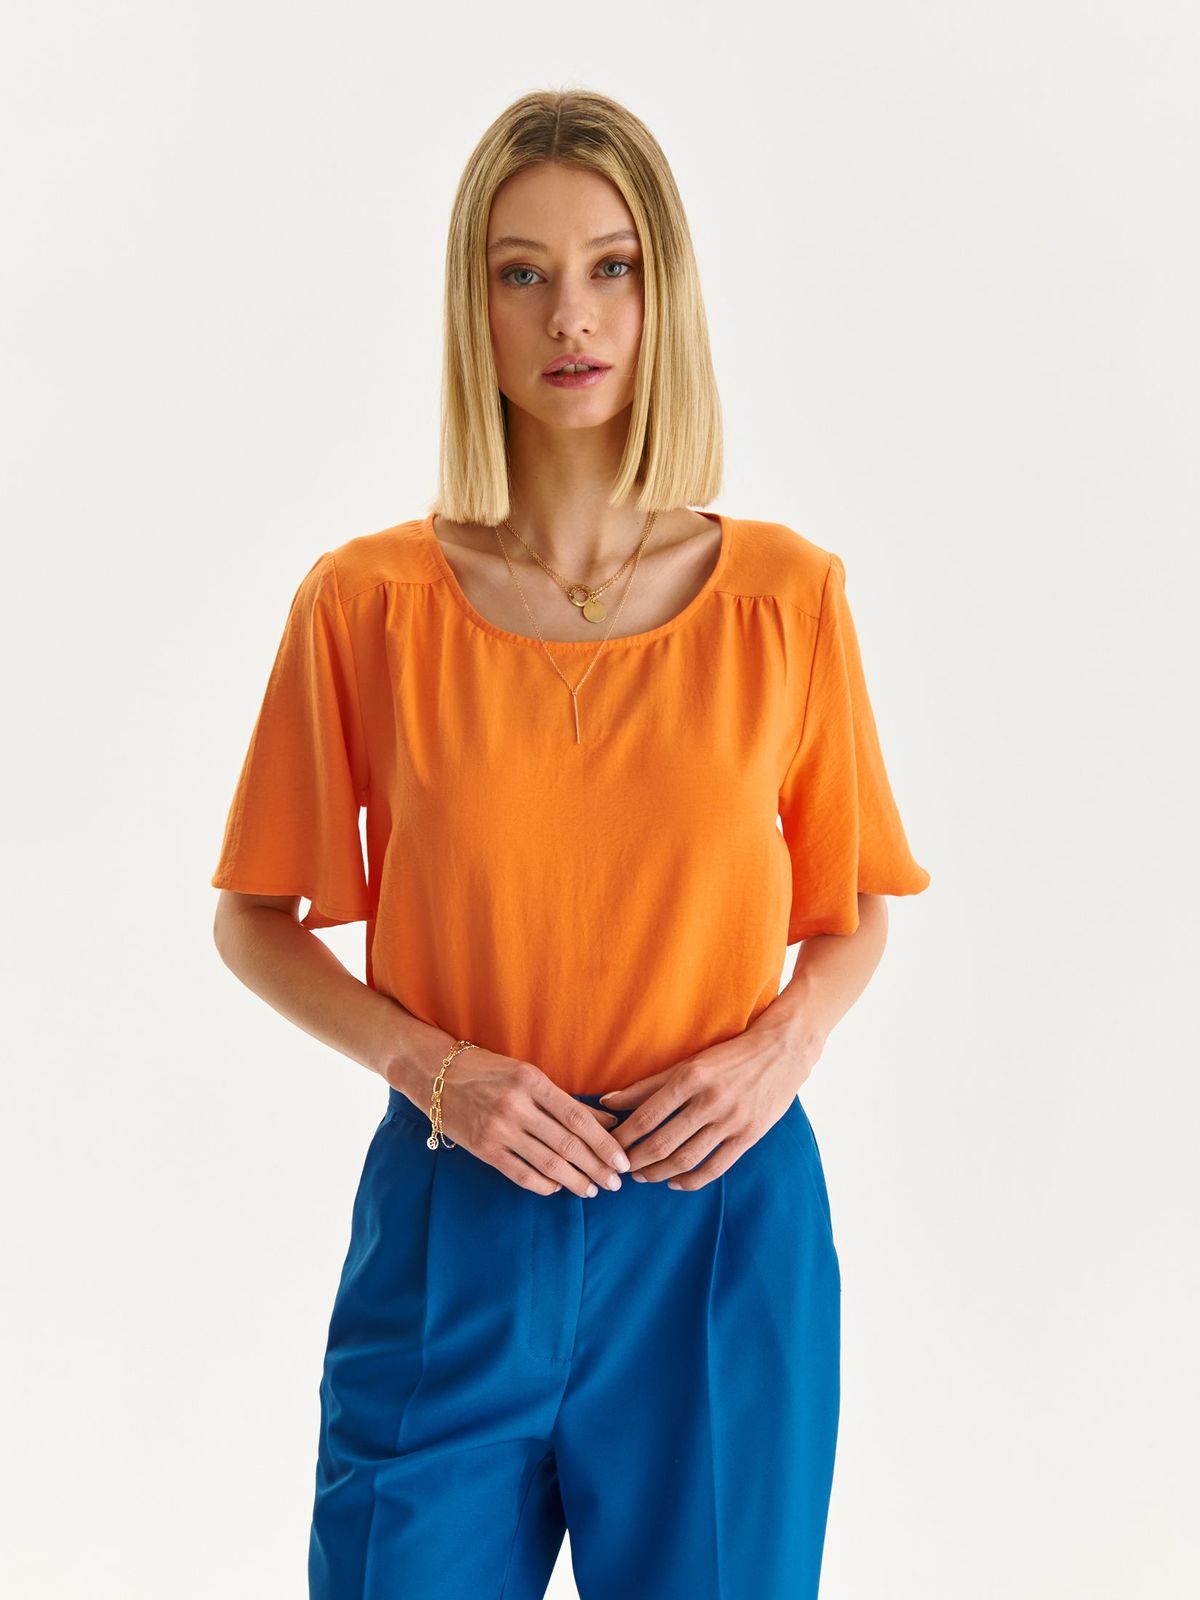 Bluza dama din material subtire portocalie cu croi larg si decolteu rotunjit - Top Secret